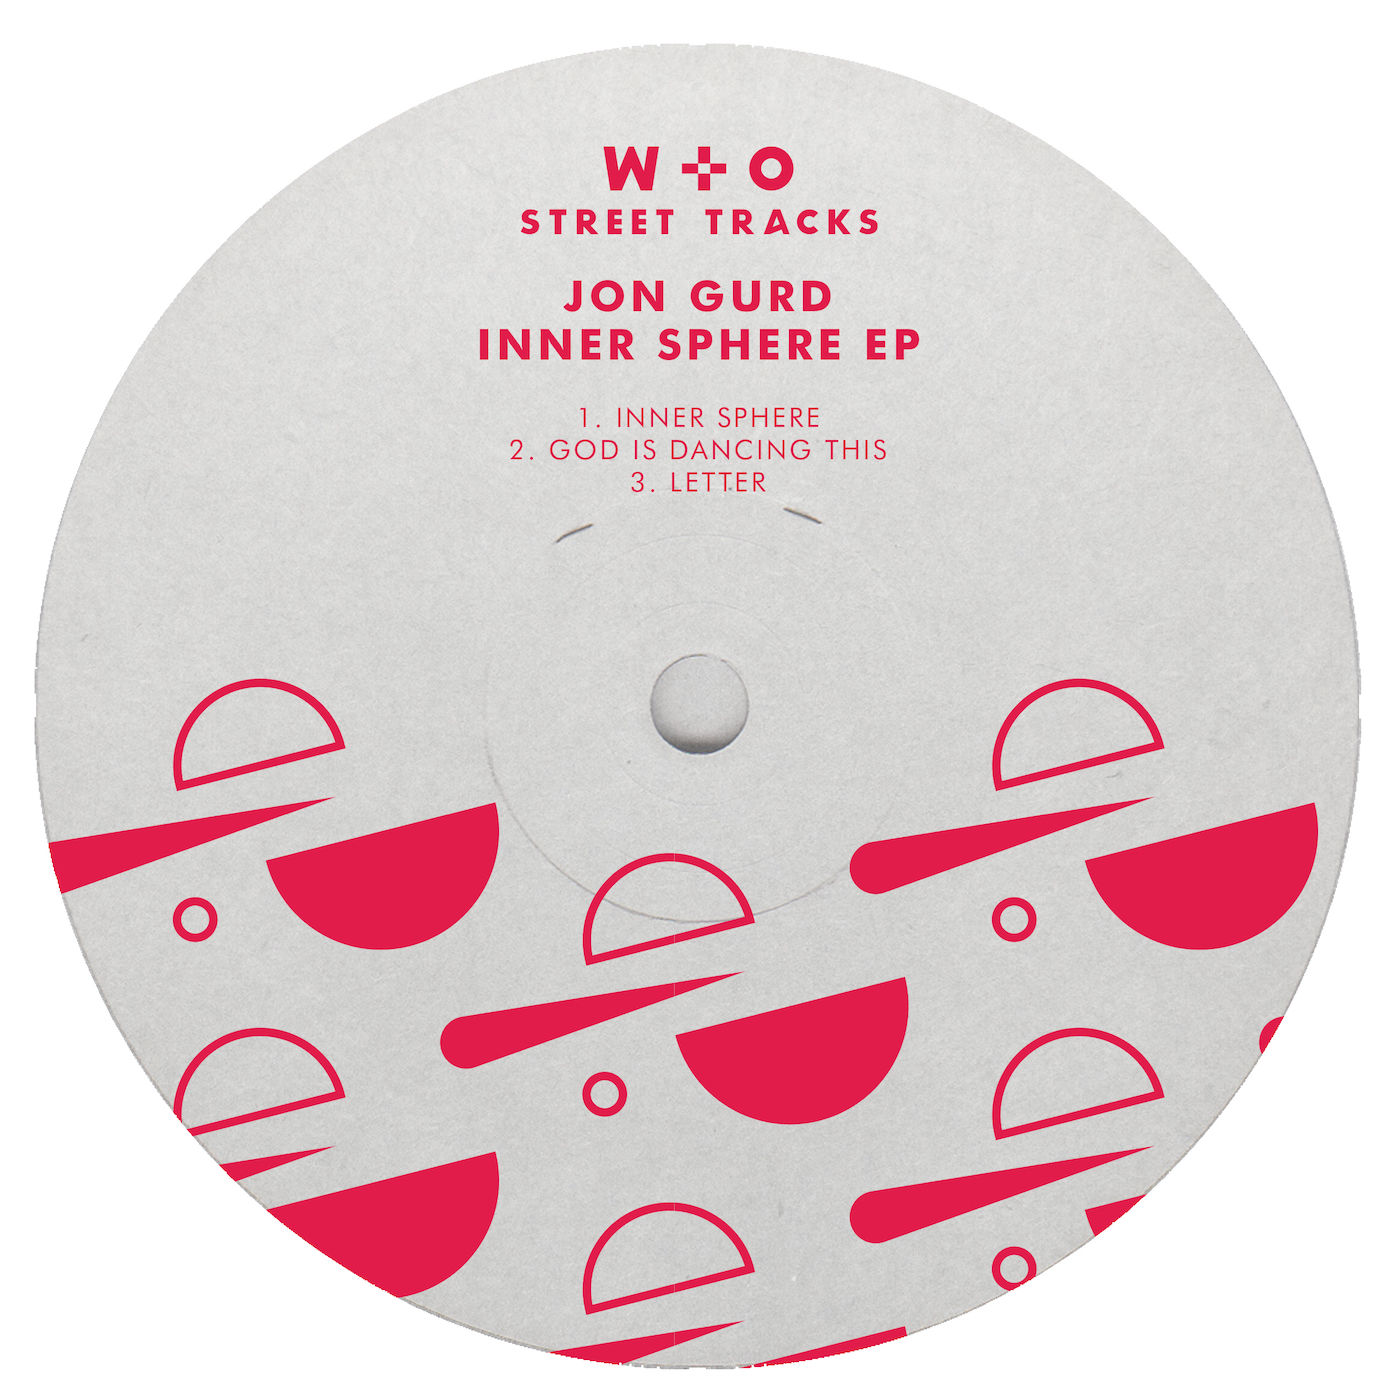 Jon Gurd - Inner Sphere EP / W&O Street Tracks